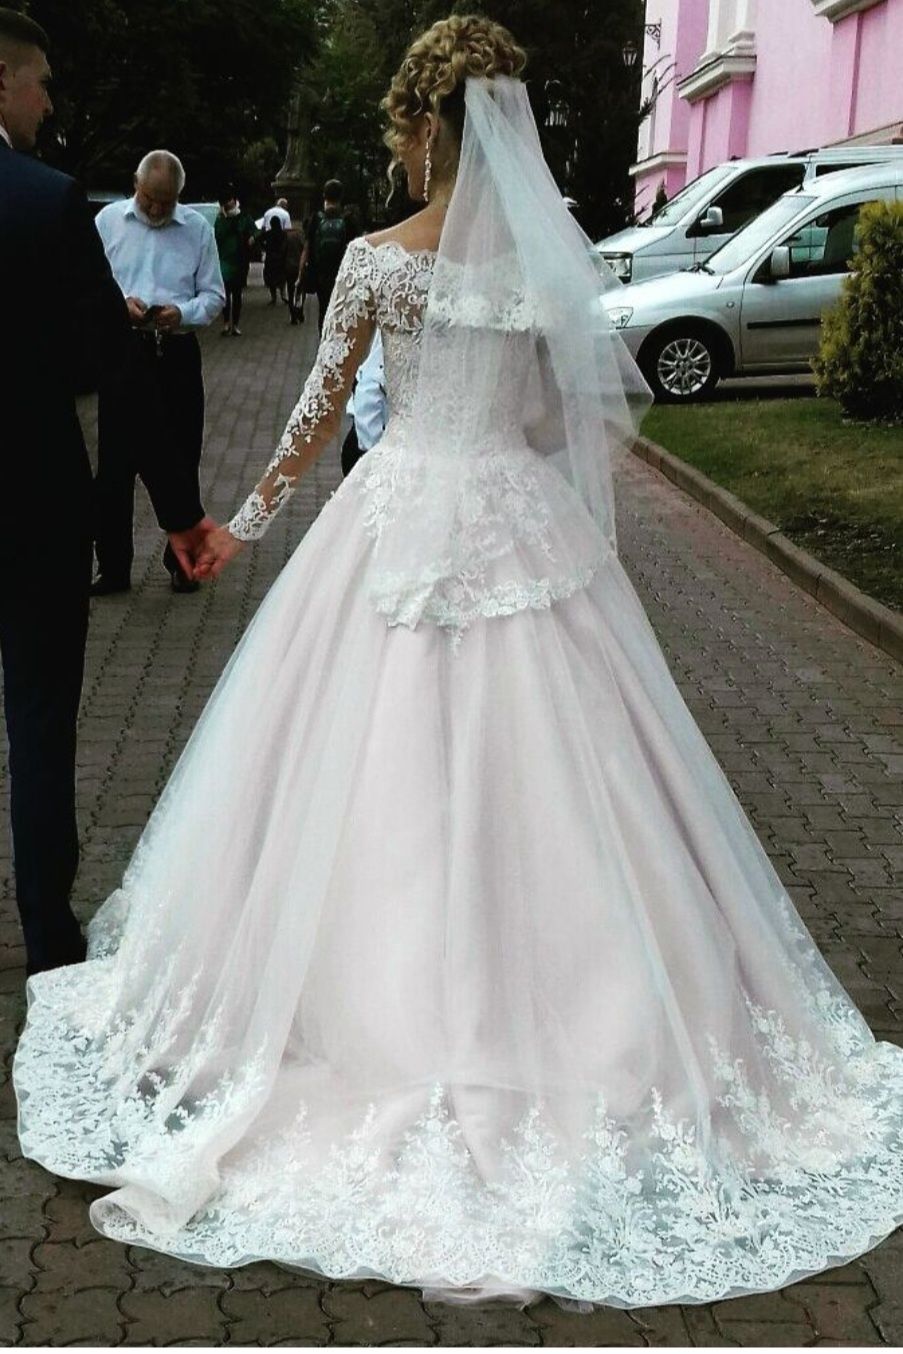 Весільна сукня пудра